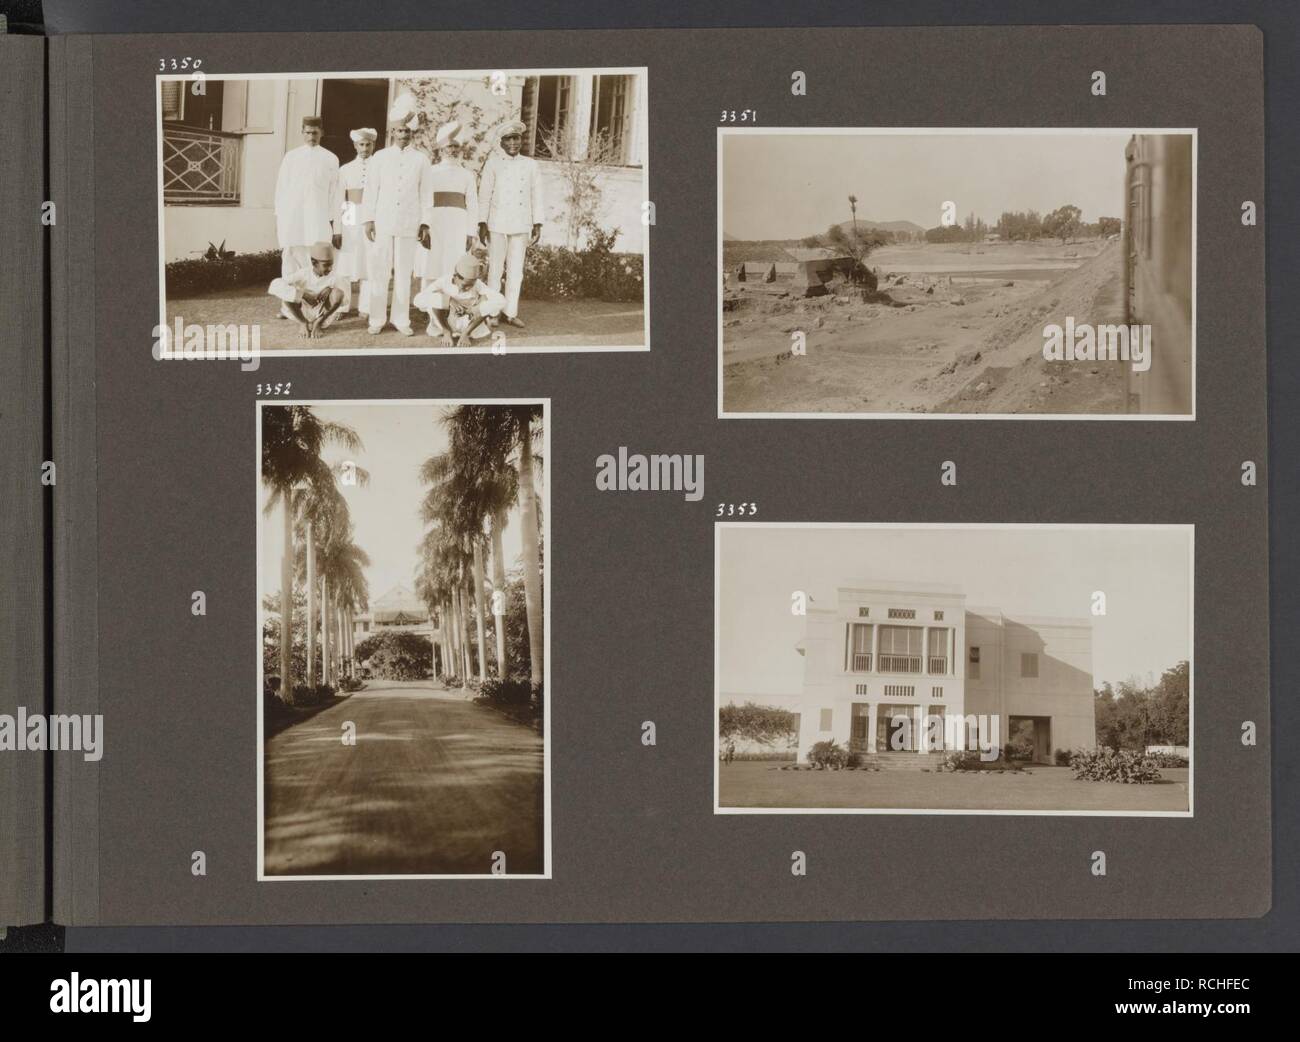 Albumblad met vier fotos. Linksboven bedienend personeel van de ambassade op 3, Bestanddeelnr 36 23. Stock Photo